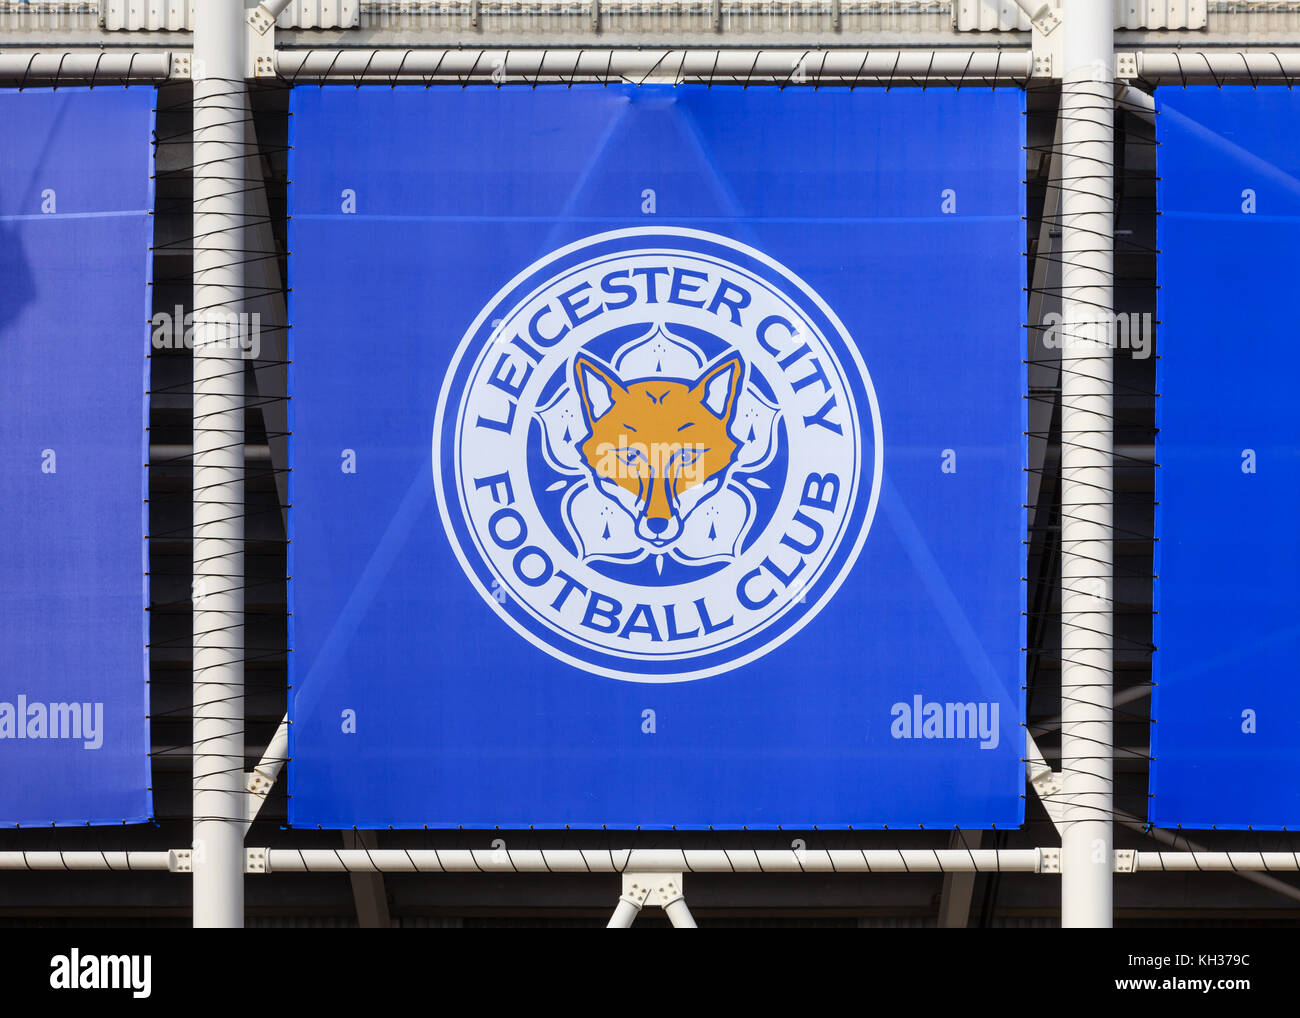 Une fresque de la ville de Leicester orne le badge King Power stadium en Angleterre. Le stade abrite le club de football de Leicester City Banque D'Images